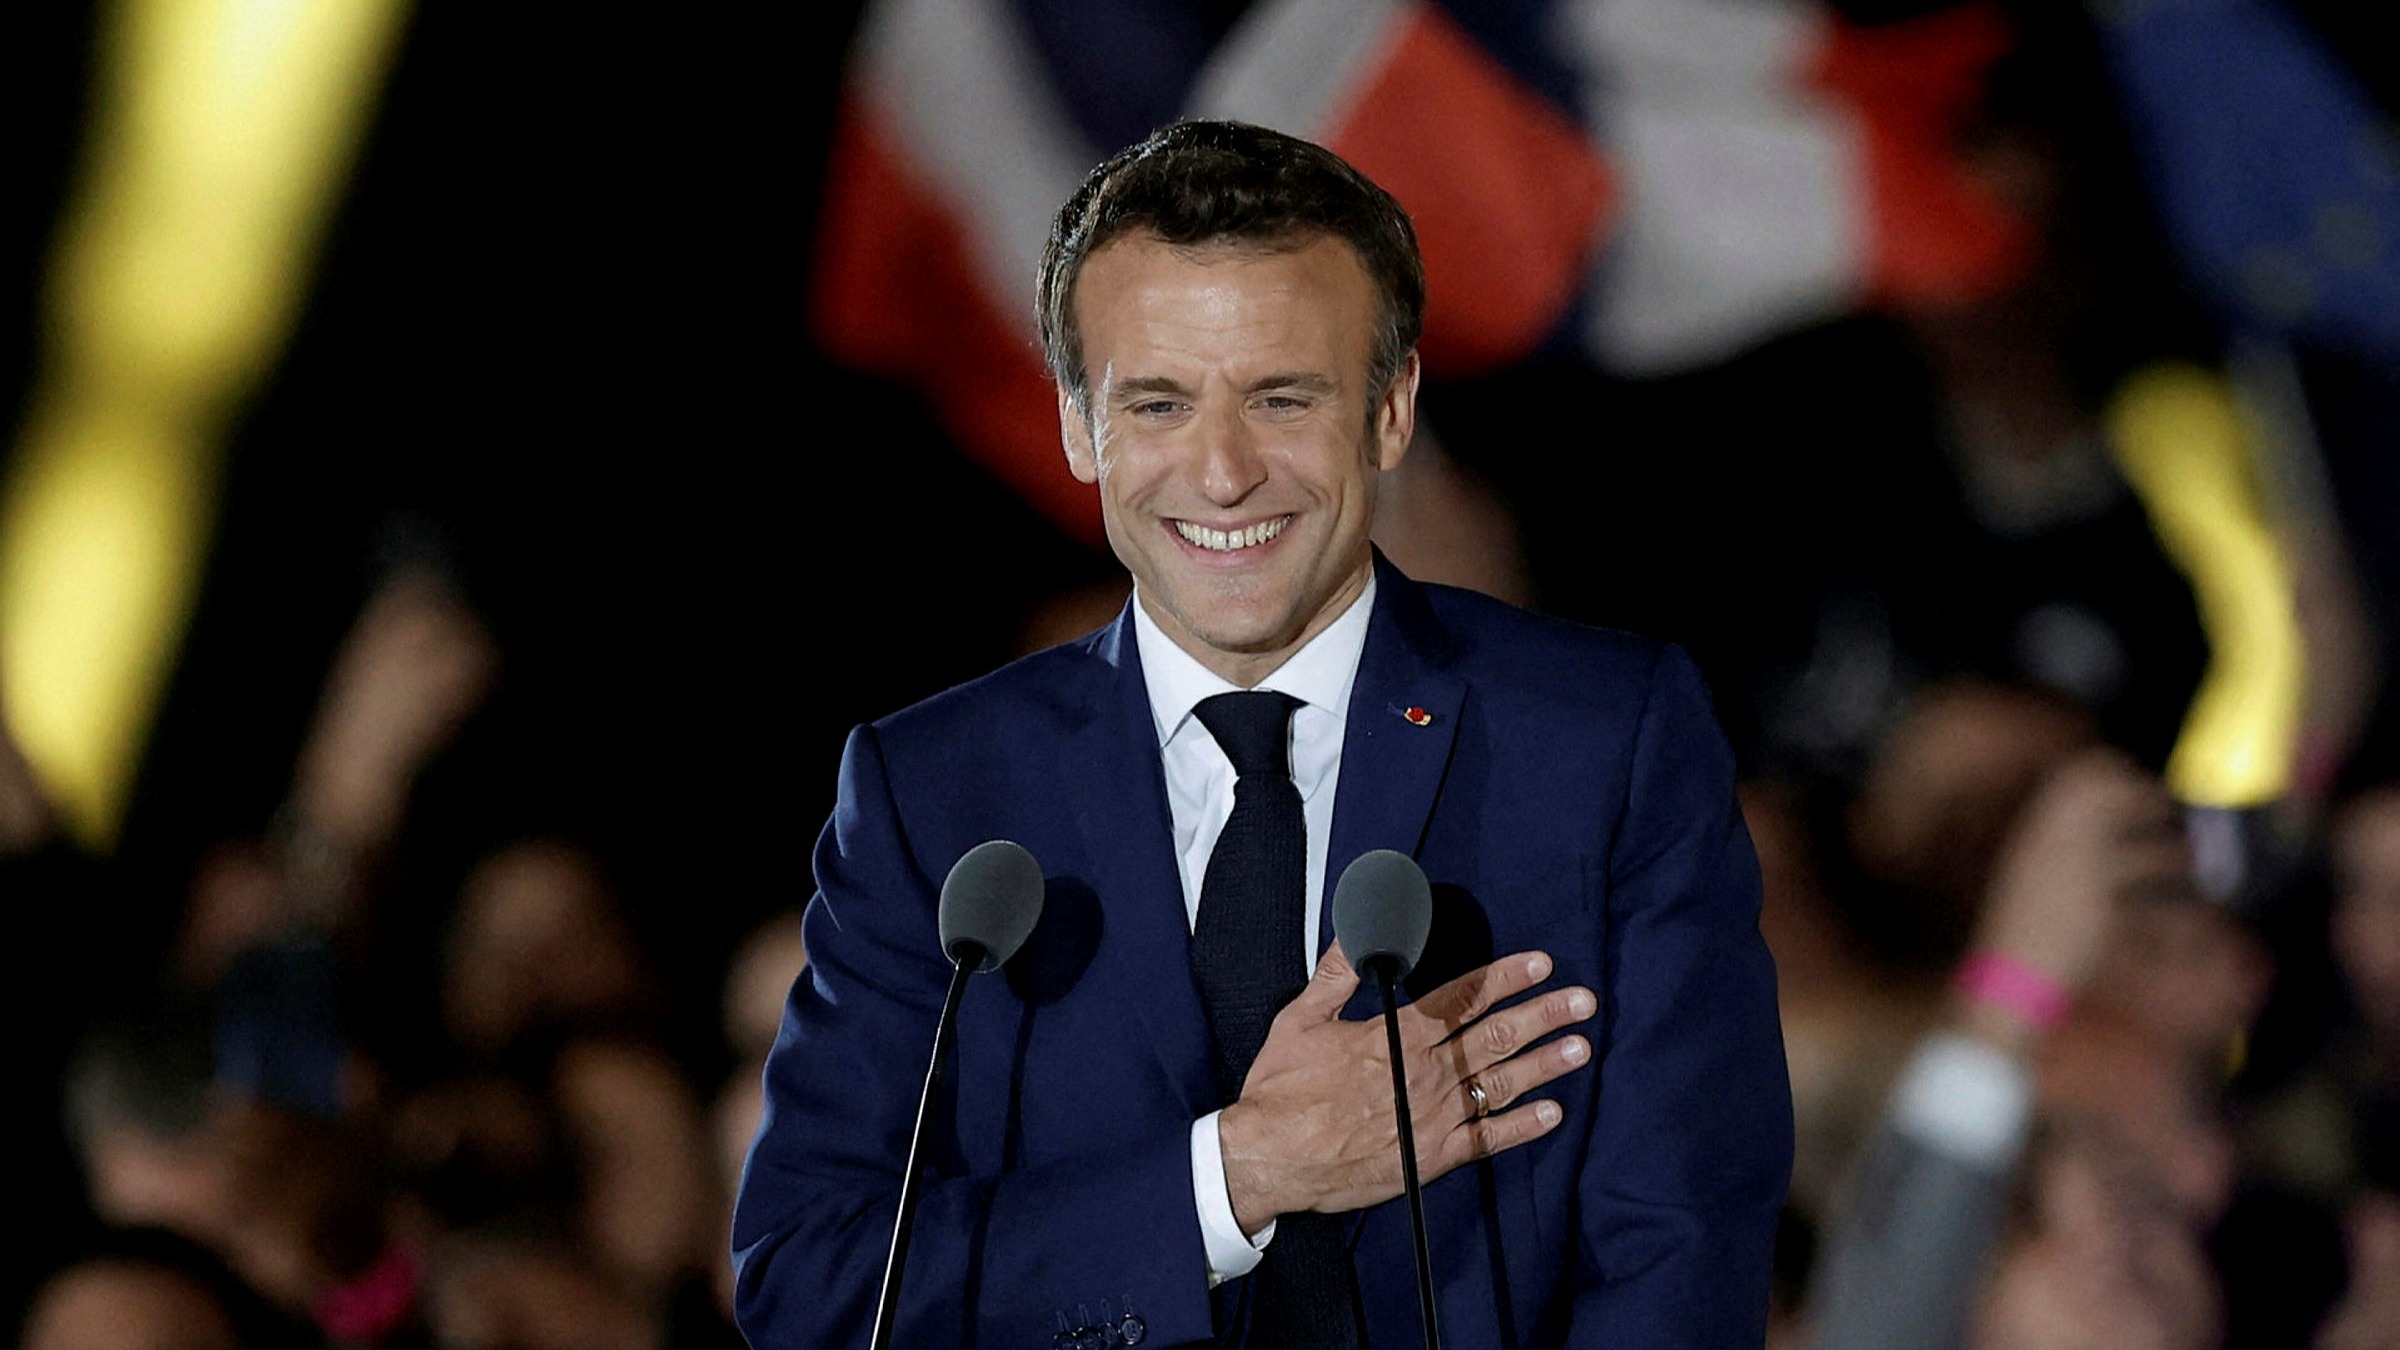 Διαμαντόπουλος στον Realfm 97,8: Αυτό είναι το μήνυμα των γαλλικών εκλογών